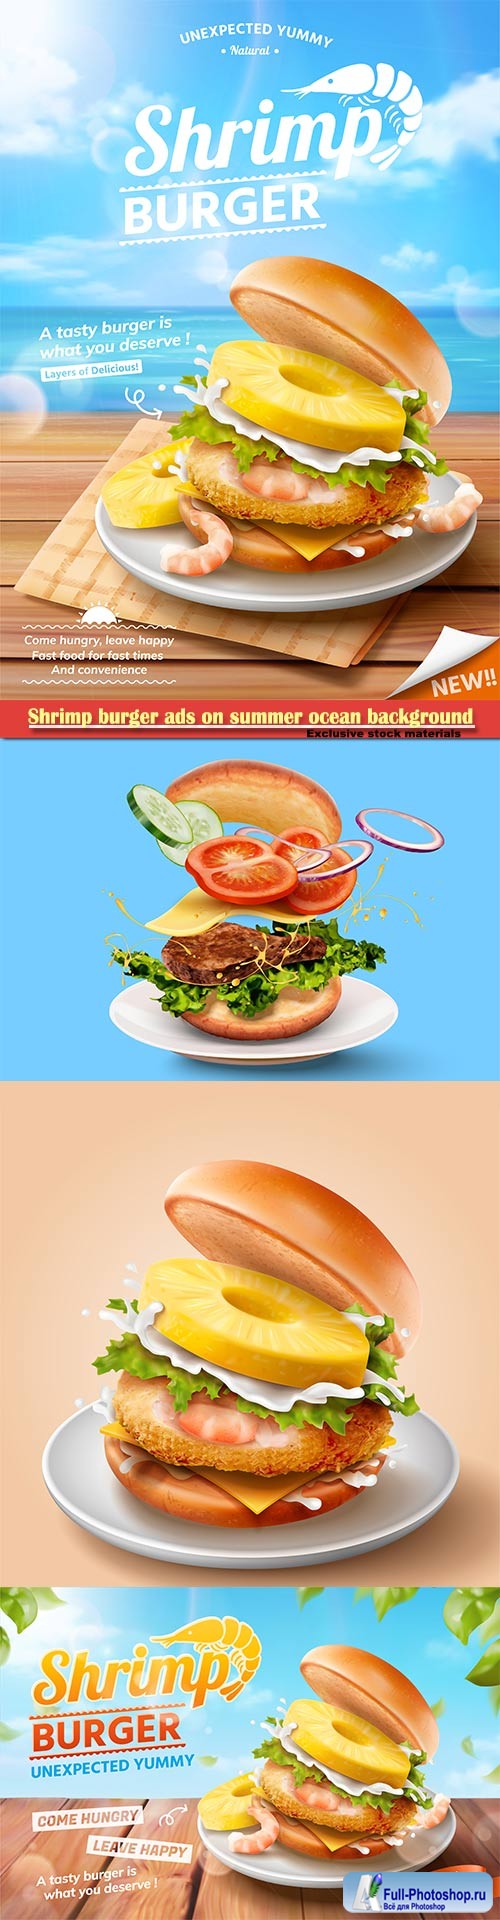 Shrimp burger ads on summer ocean background in 3d illustration